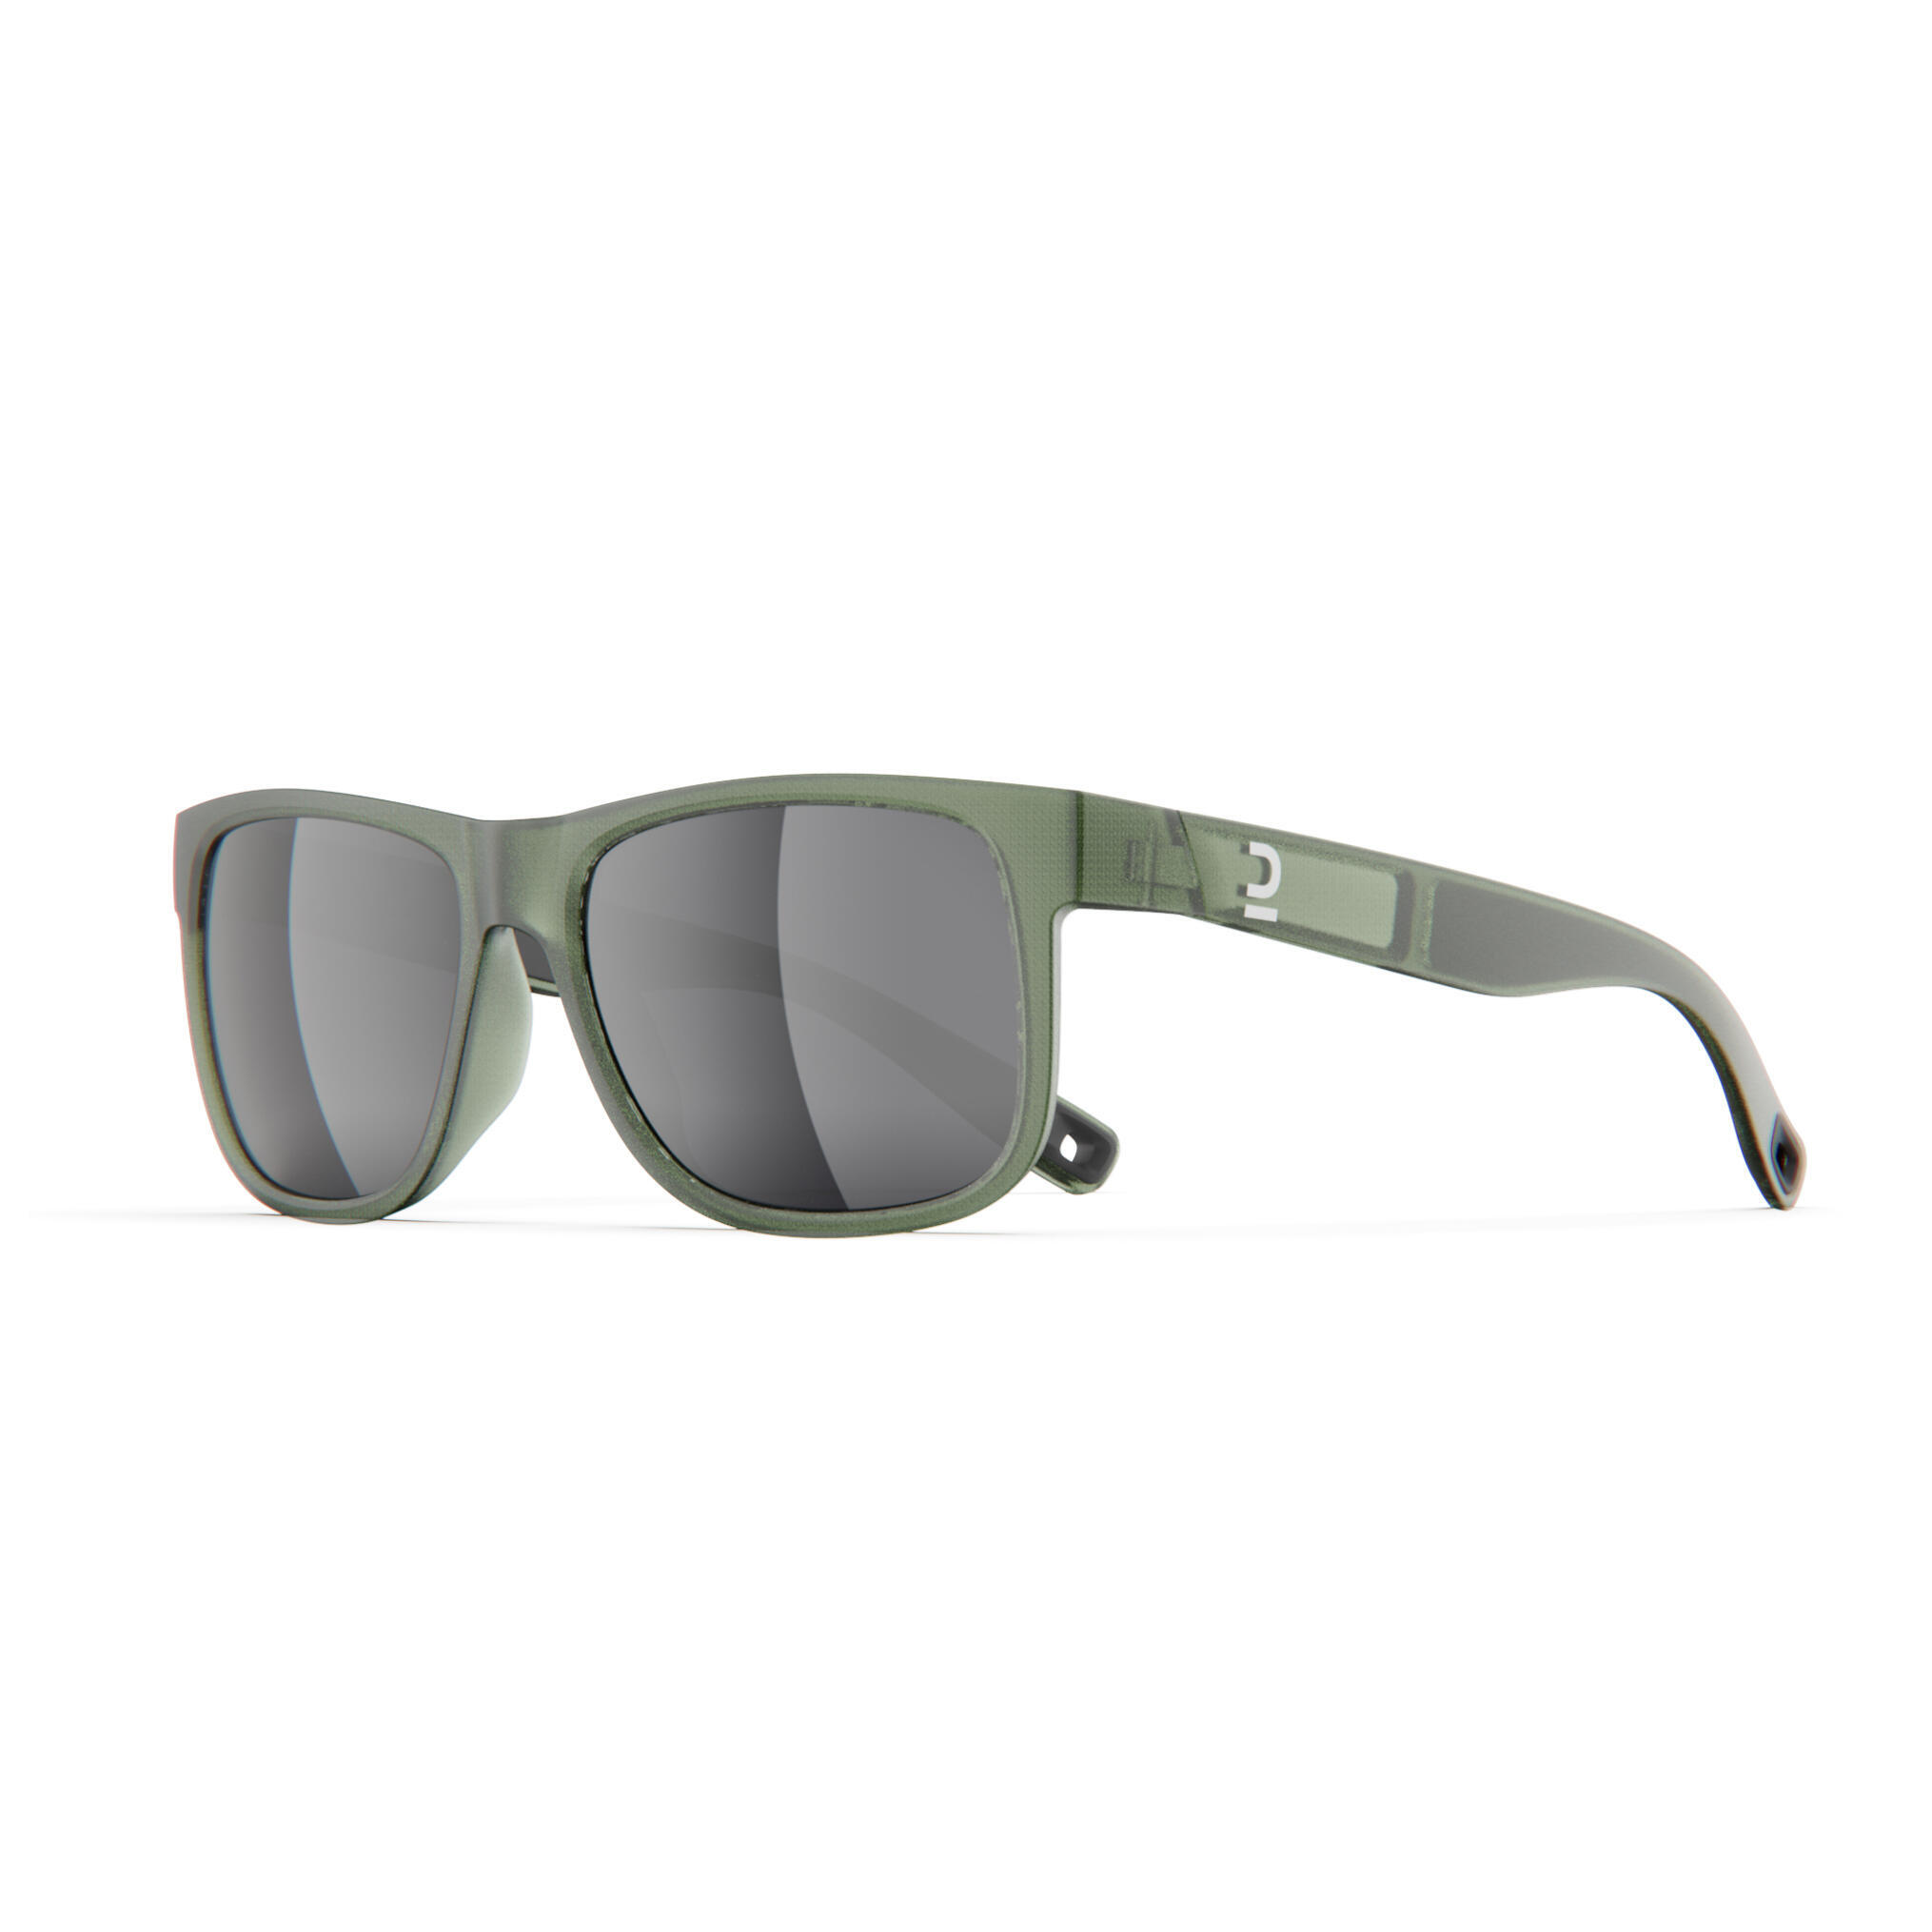 Очки солнцезащитные Quechua MH530 для походов, категории 3, хаки / серебристый / лаврово-зеленый солнцезащитные очки alberto casiano mia silver серебристый